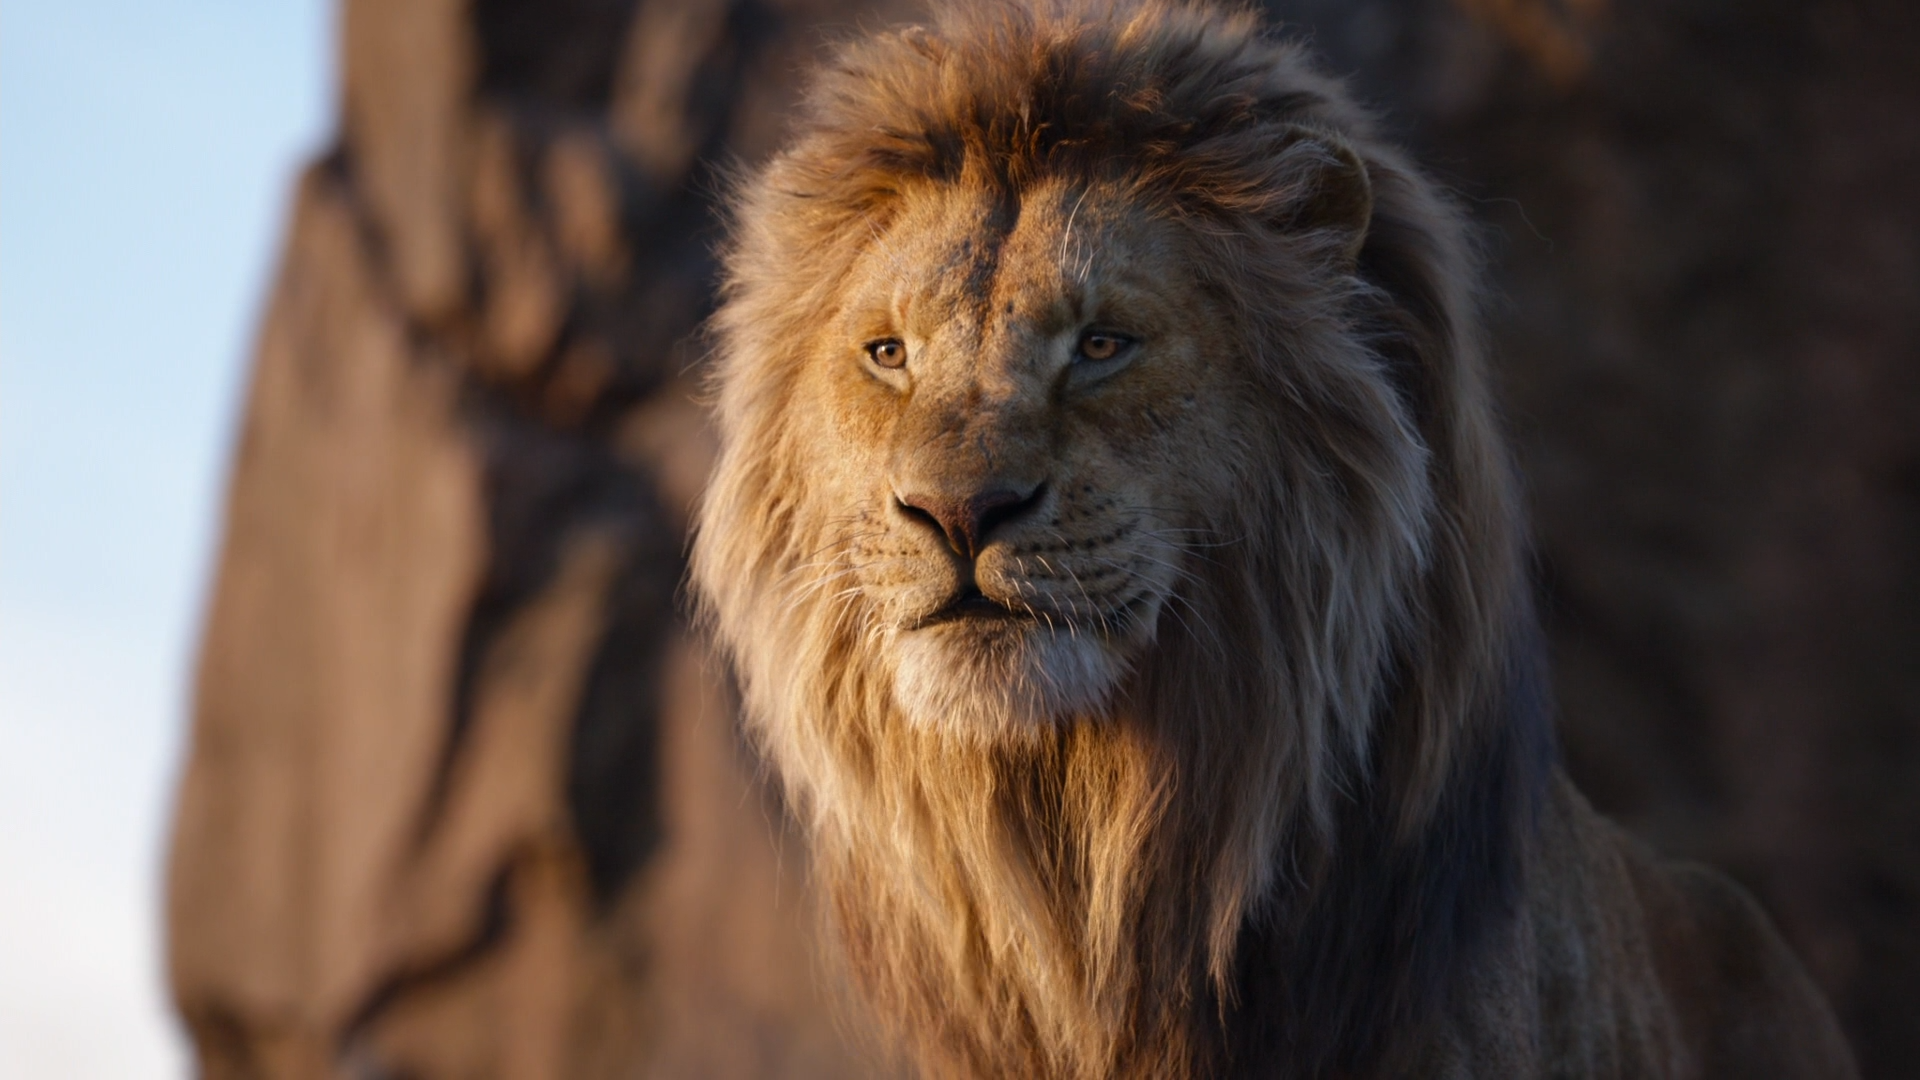 watch lion king 2 movie free online